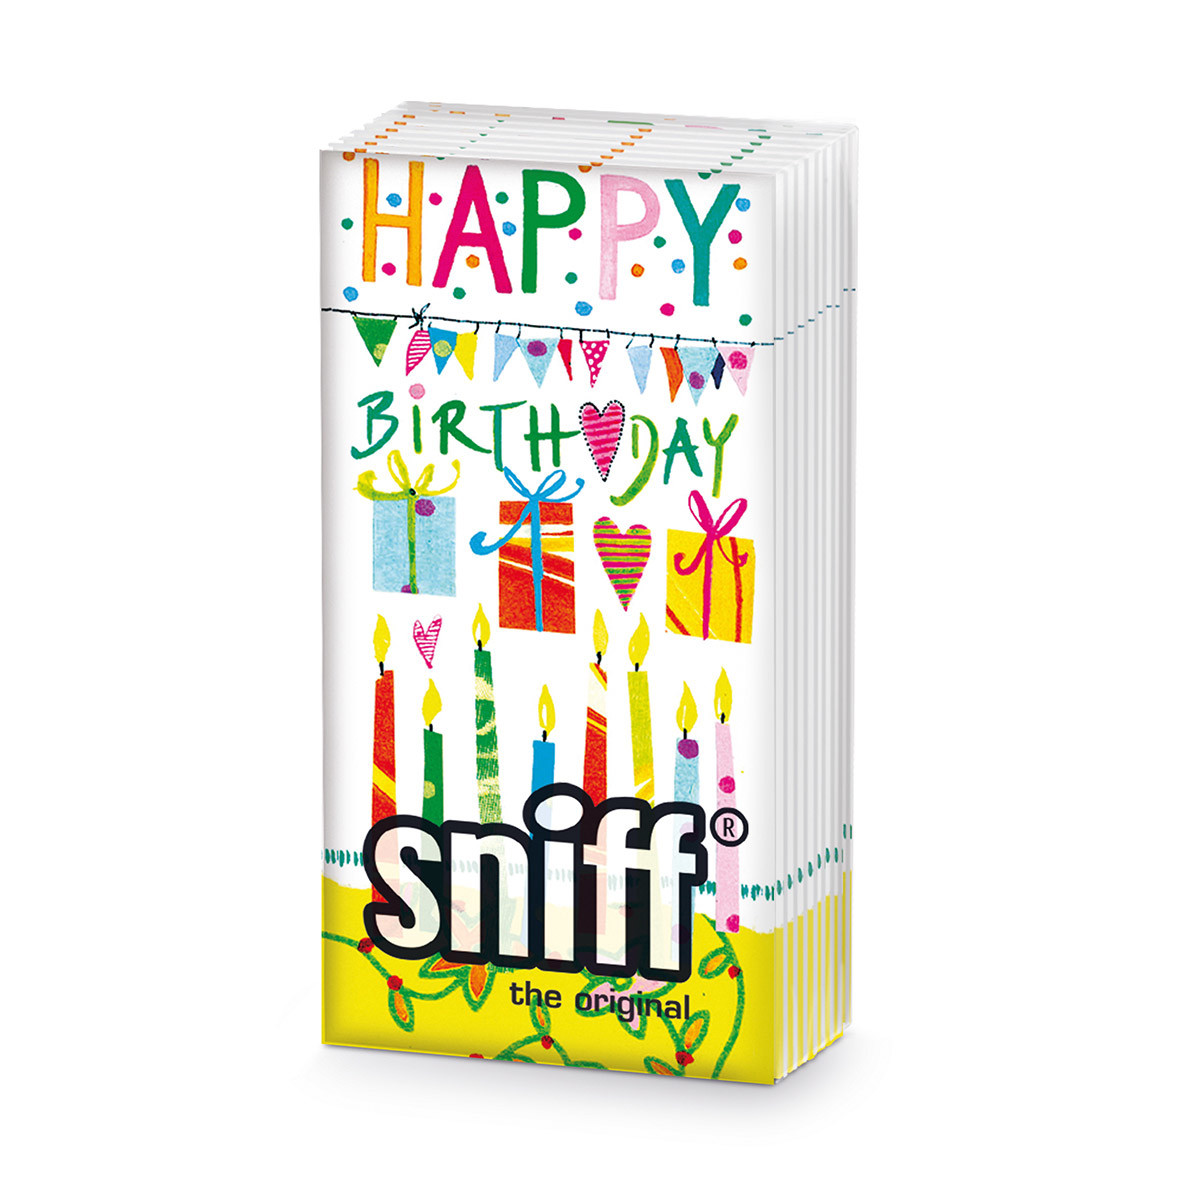 Happy Birthday Sniff Tissue